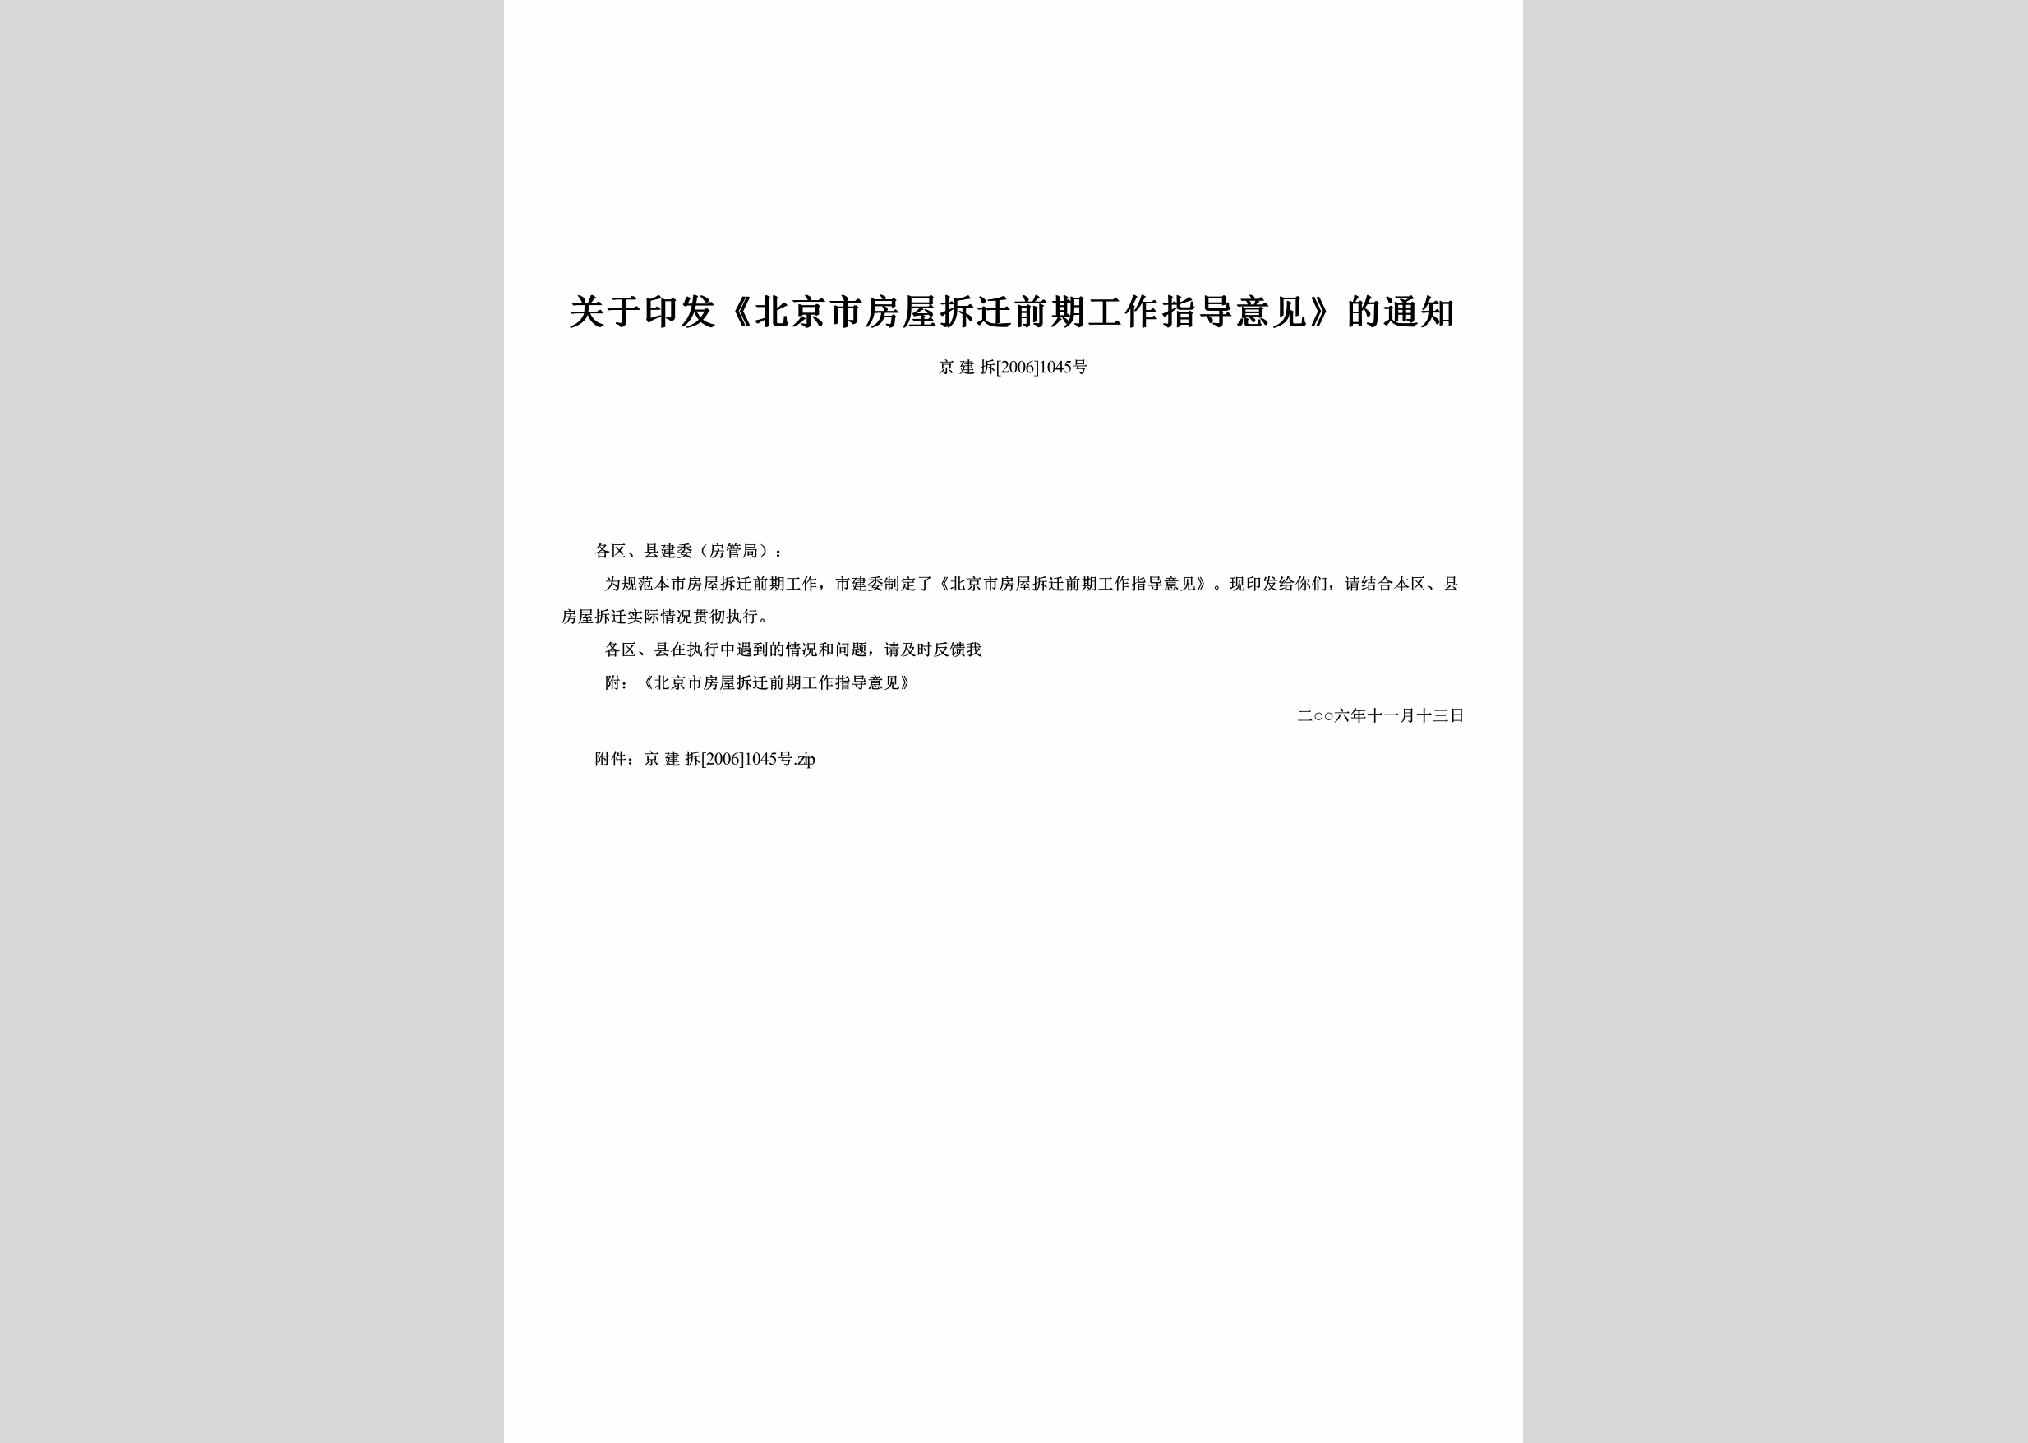 京建拆[2006]1045号：关于印发《北京市房屋拆迁前期工作指导意见》的通知